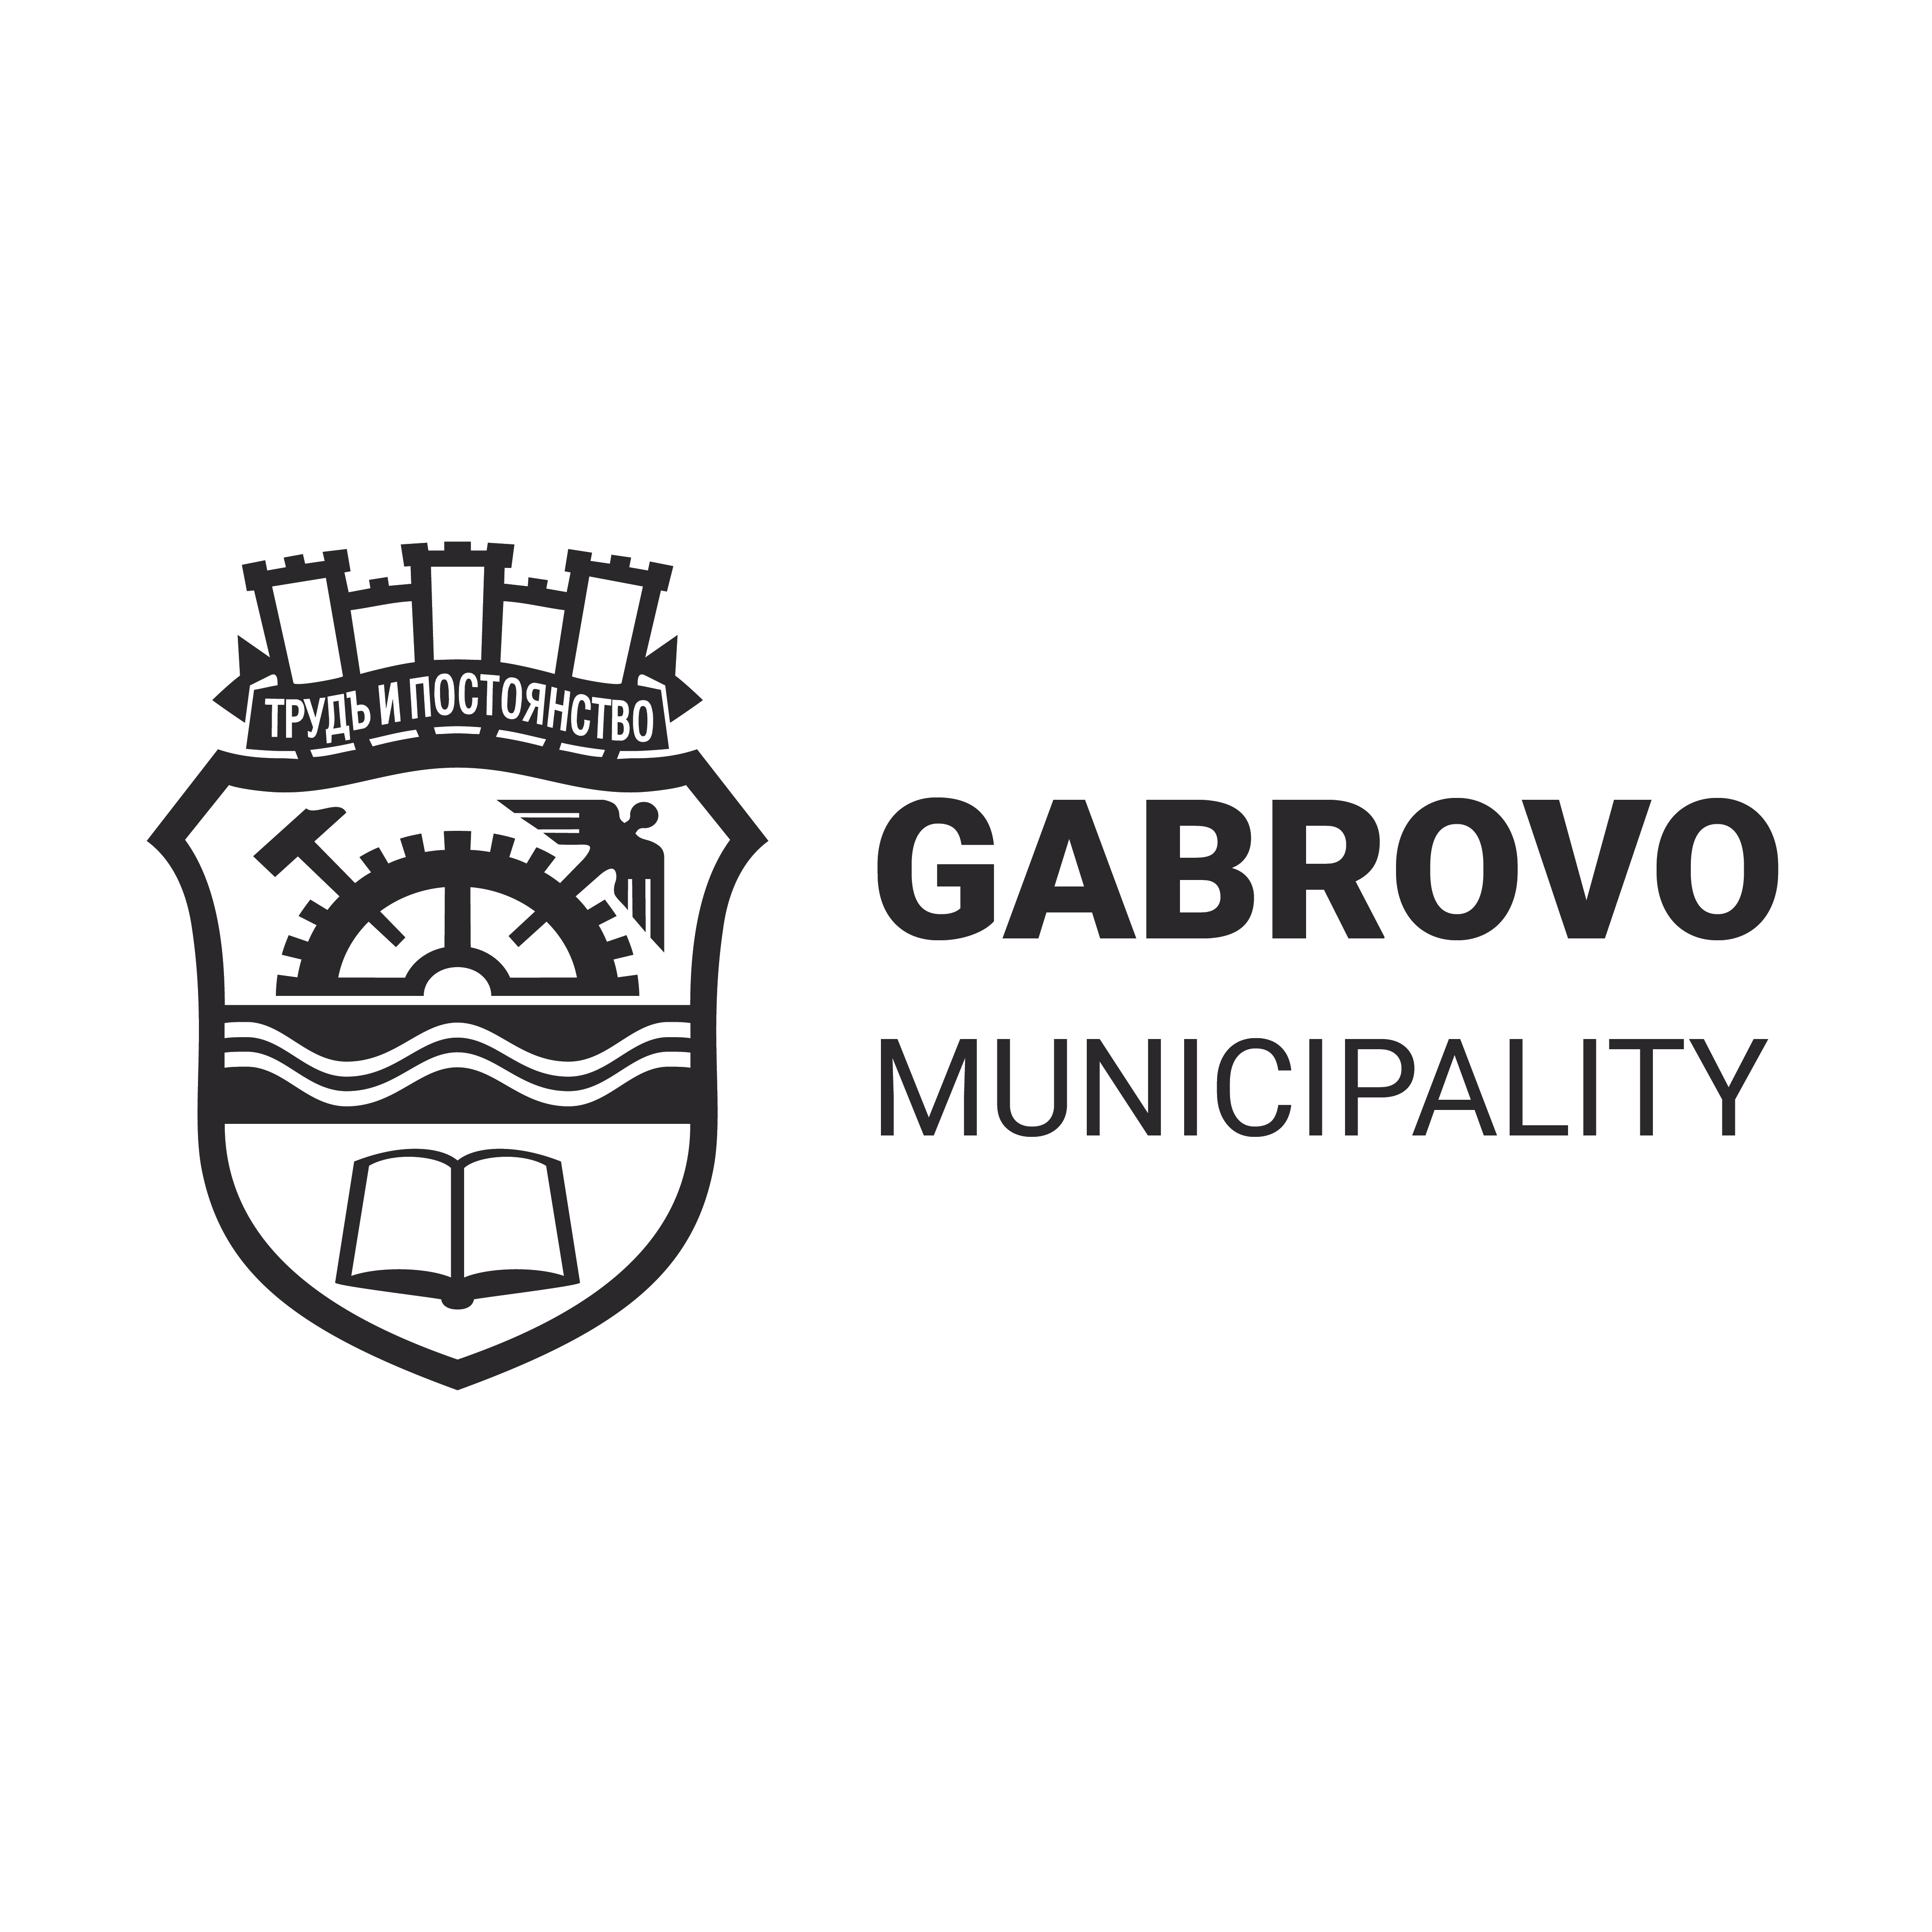 Gabrovo